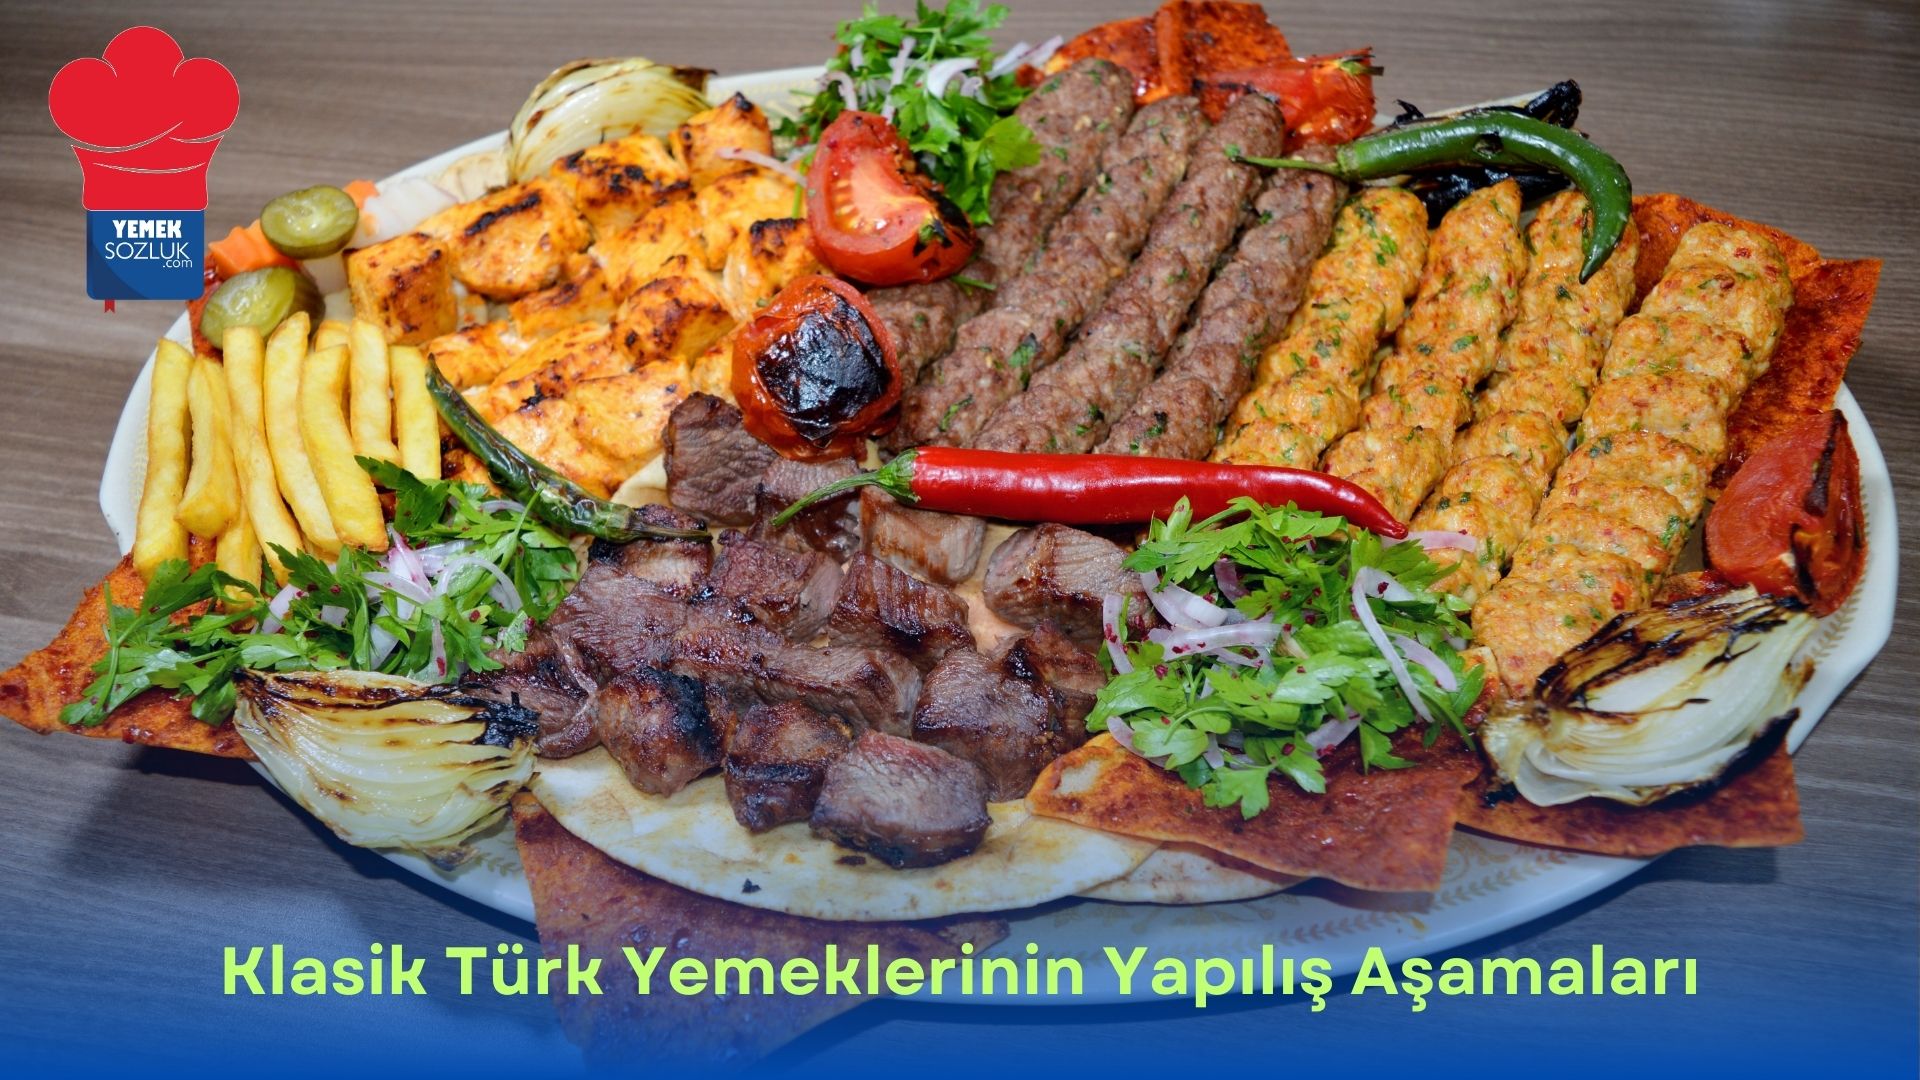 Klasik Turk Yemeklerinin Yapilis Asamalari 21